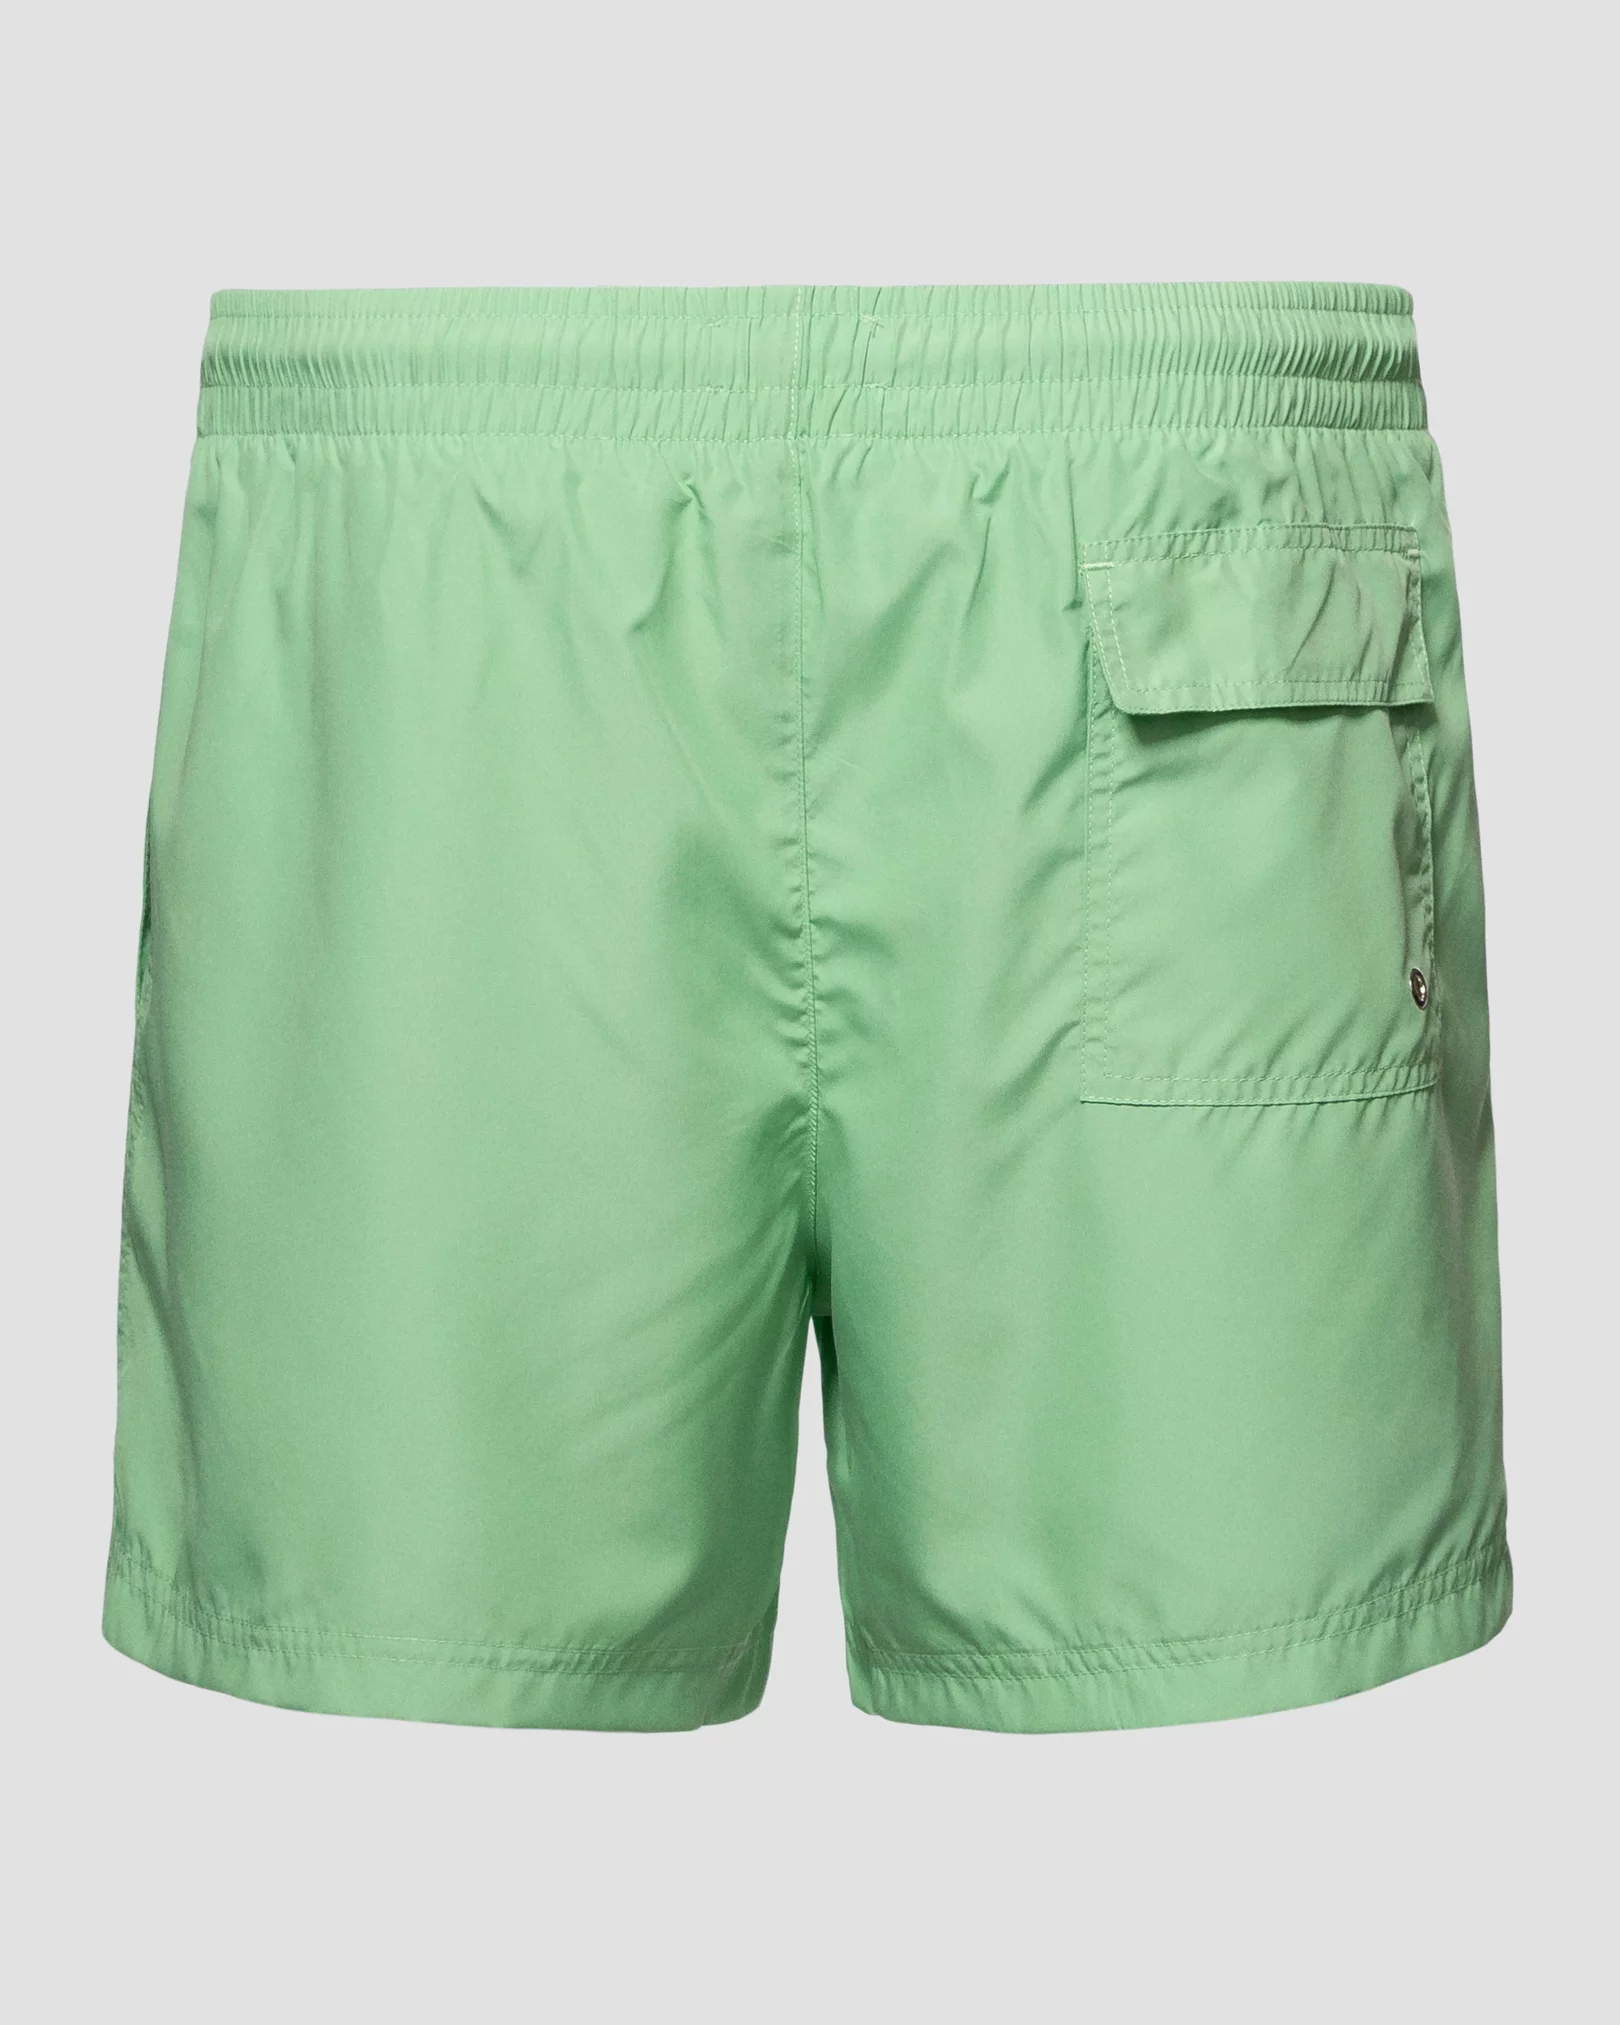 Eton - light green swimshorts